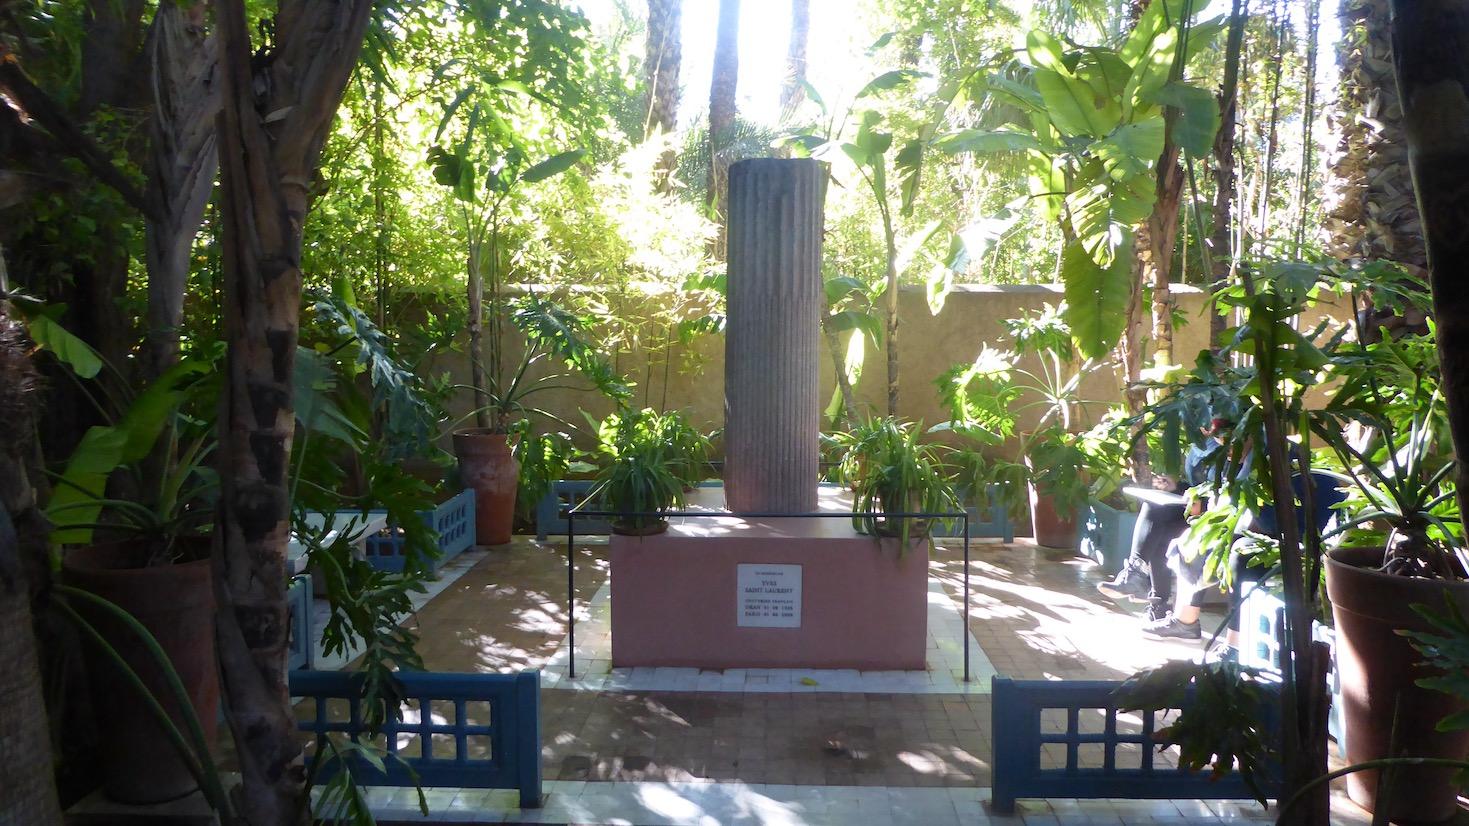 Le Jardin Majorelle in Marrakech